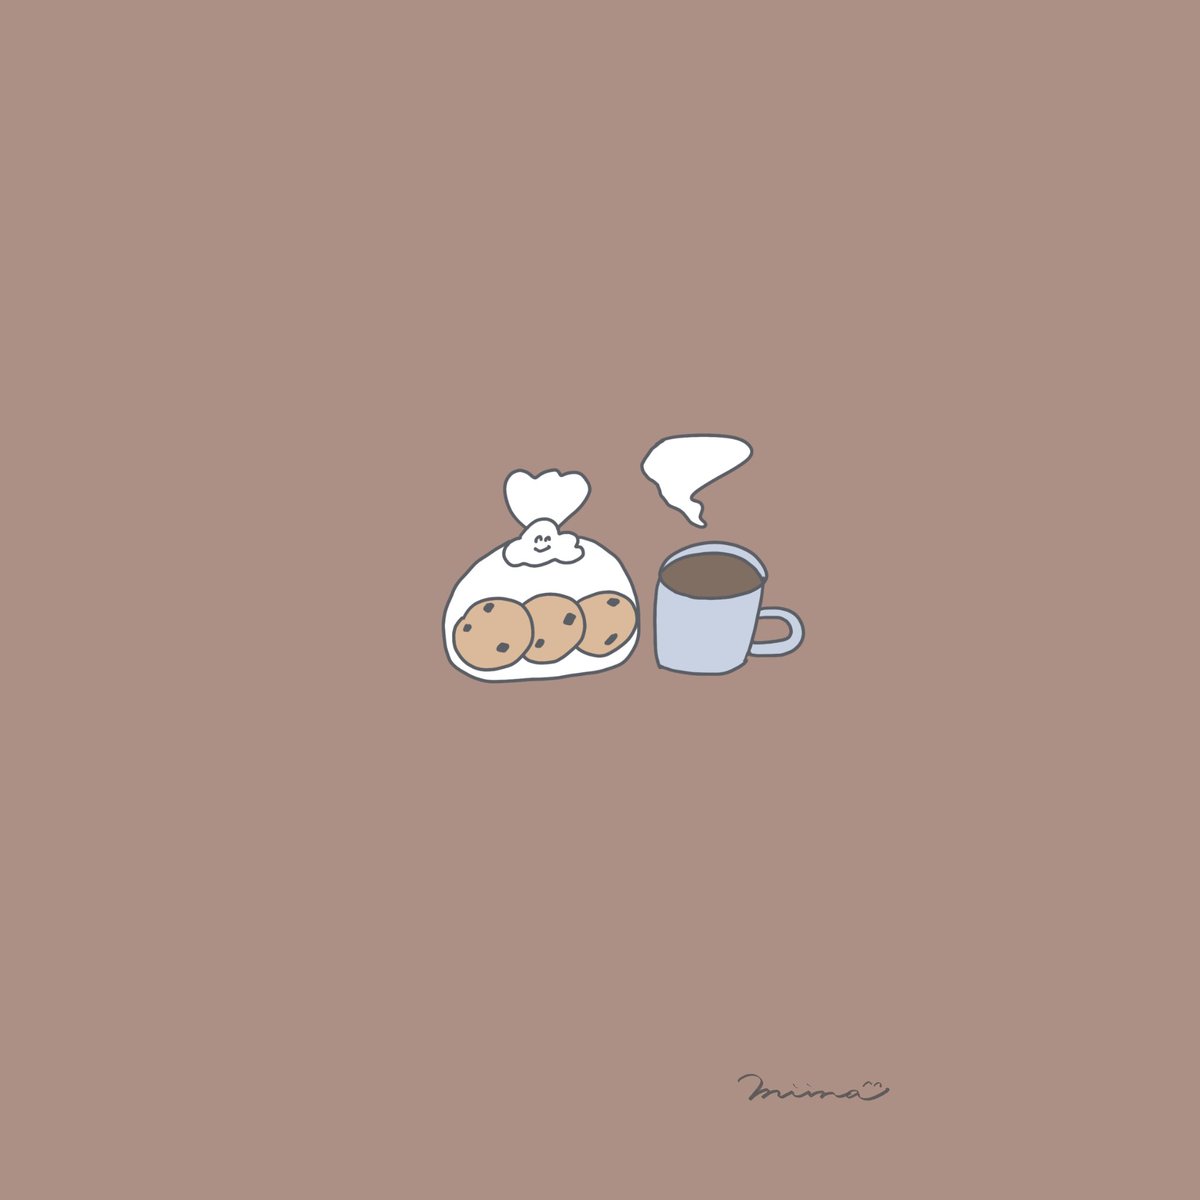 Twitter 上的 Miina ミイナ イラスト クッキーとコーヒー ひとやすみ ストーリー 壁紙 シンプルイラスト ゆるいイラスト ほんわかイラスト 線画 絵描きさんと繋がりたい イラスト好きな人と繋がりたい クッキー コーヒー Cookie Coffee